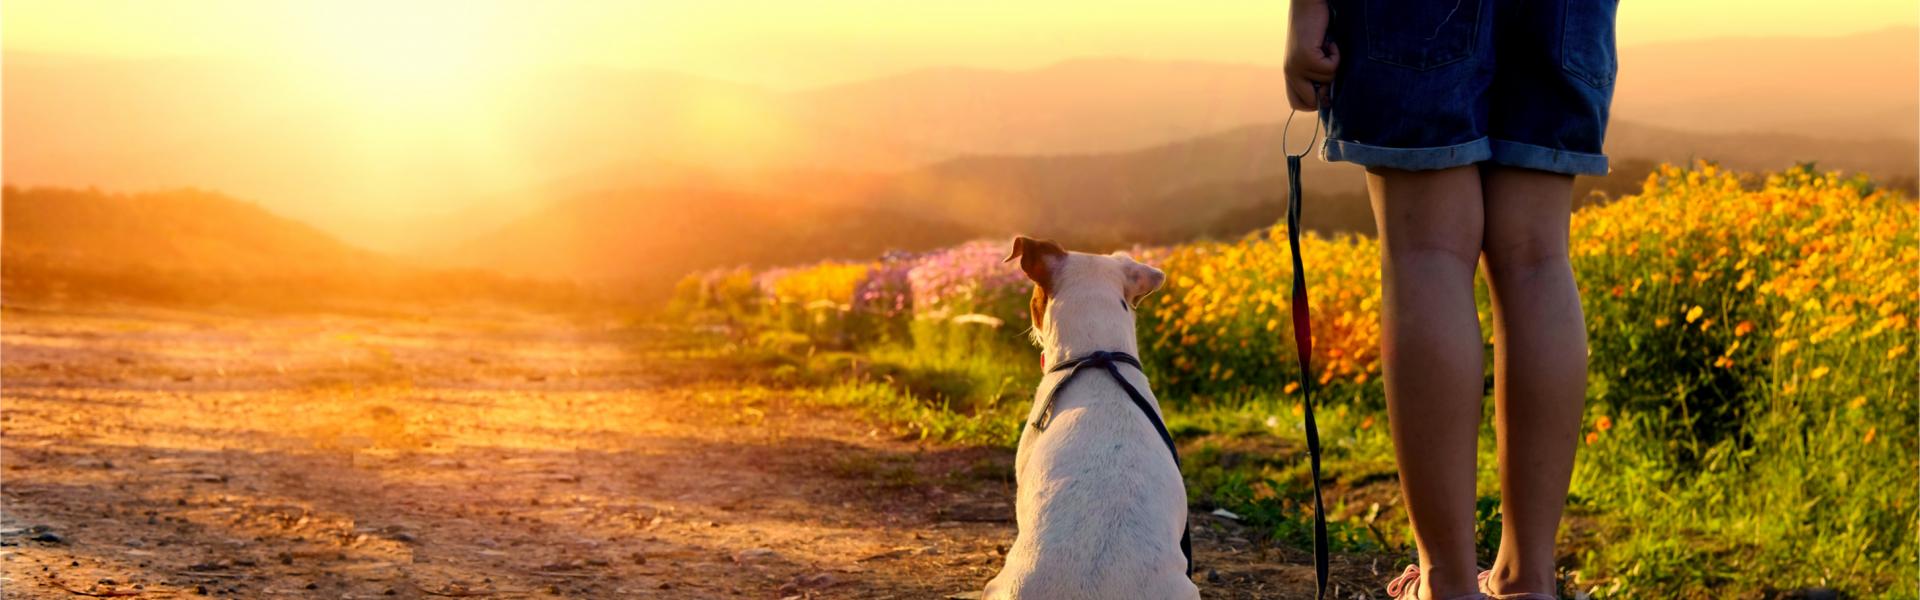 Urlaub mit Hund in Südfrankreich - Casamundo